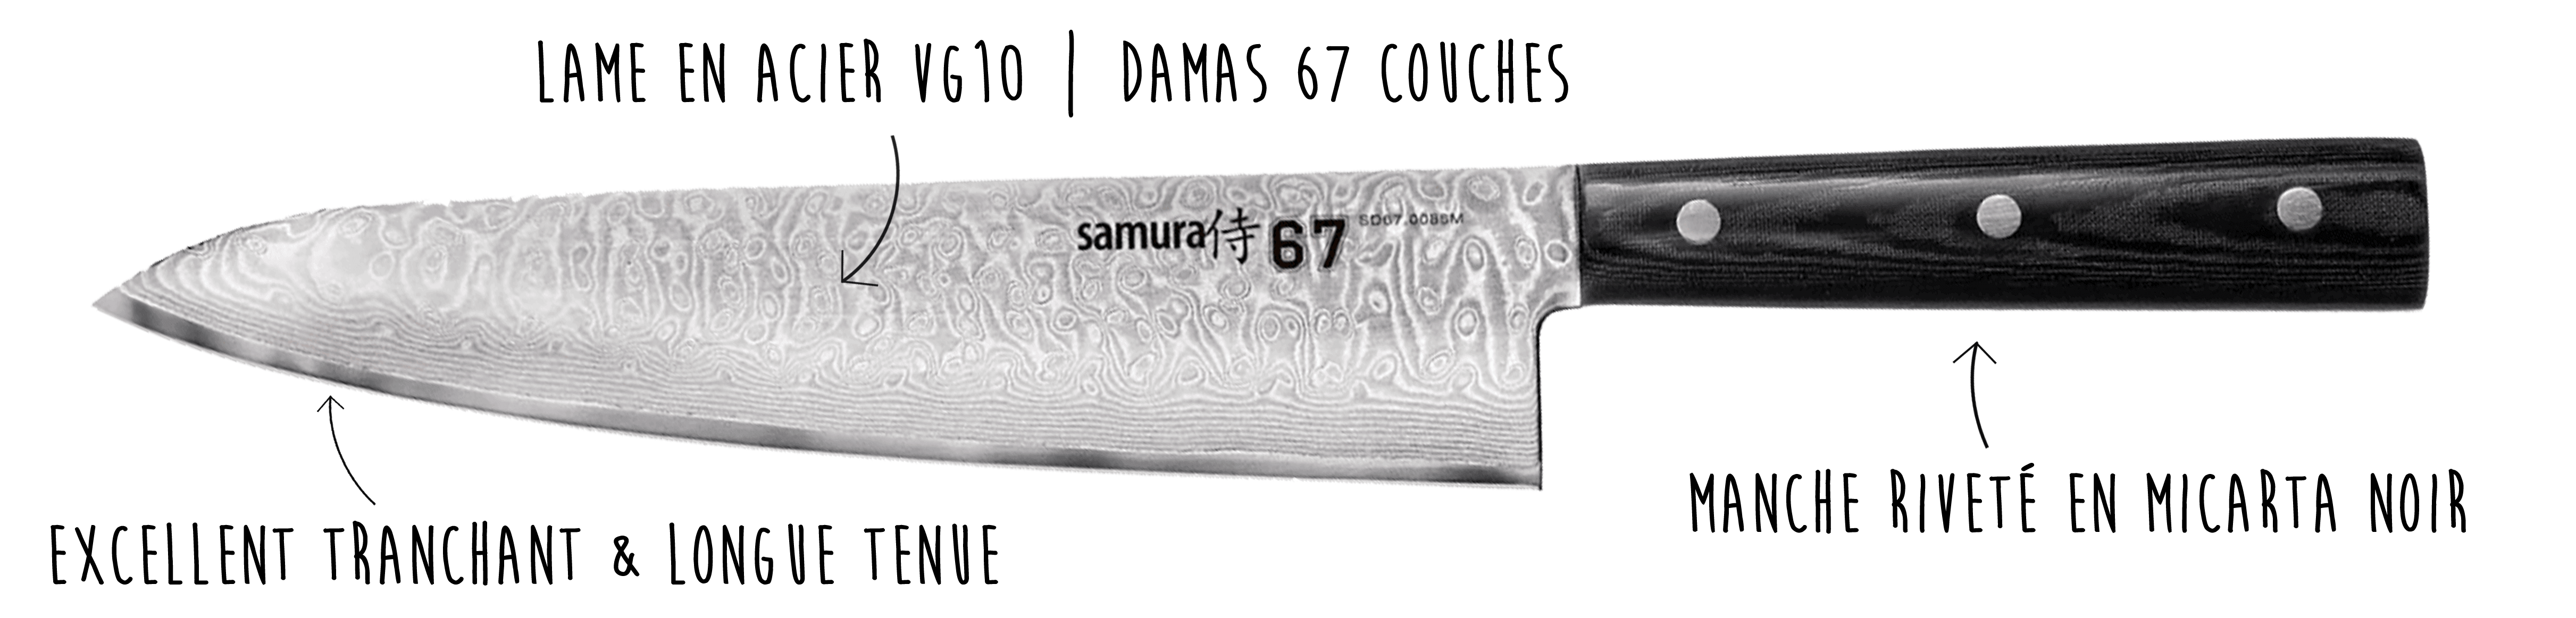 Découvrez le couteau Samura ici